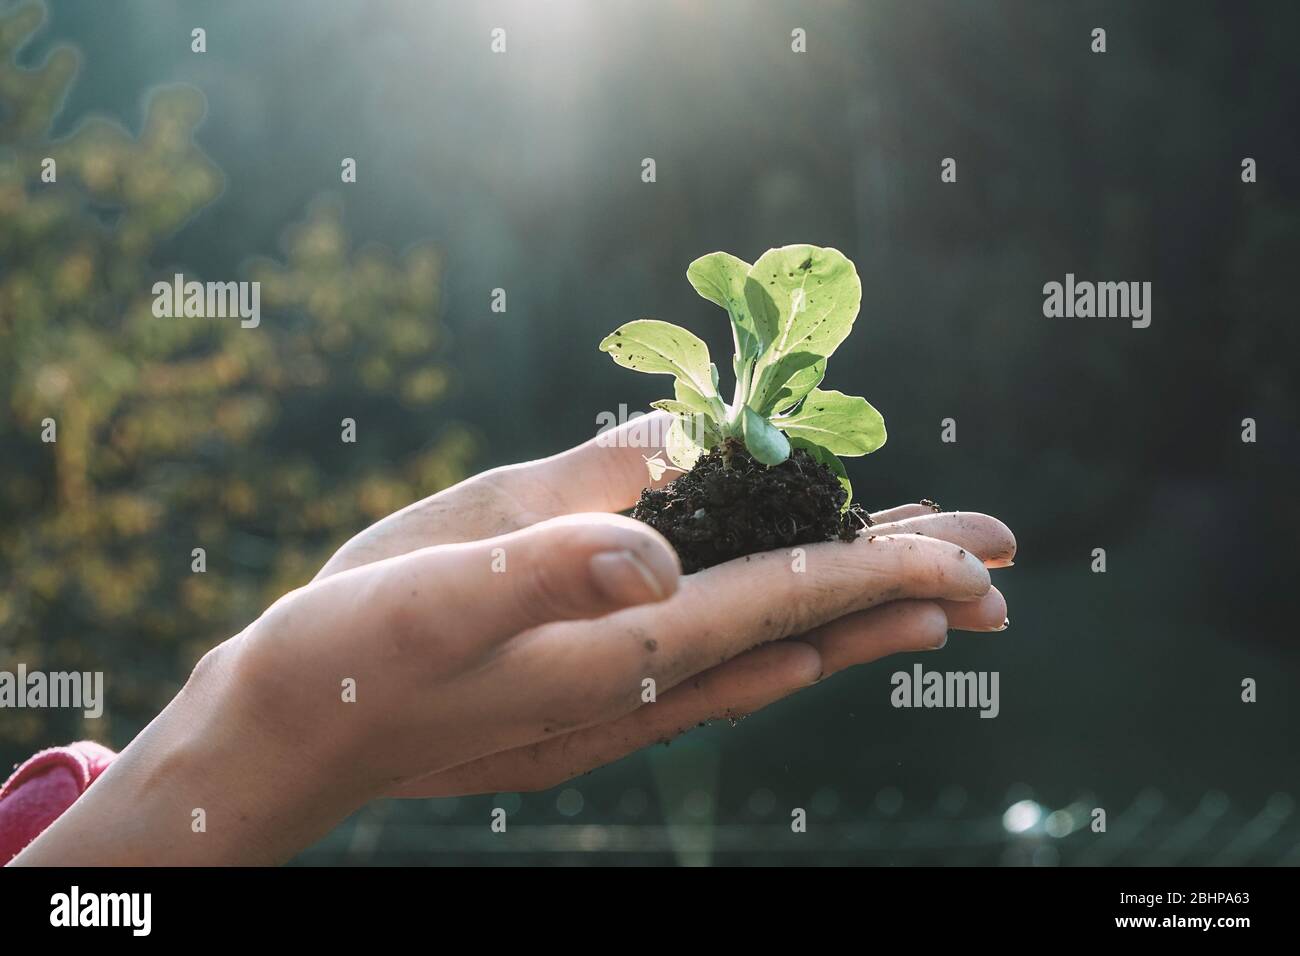 Frau Hände Pflanzen einen Samen im Garten Garten - Mädchen Gartenarbeit während der Quarantäne Isolation - Fokus auf Pflanzen - Natur und Pflege-Konzept Stockfoto